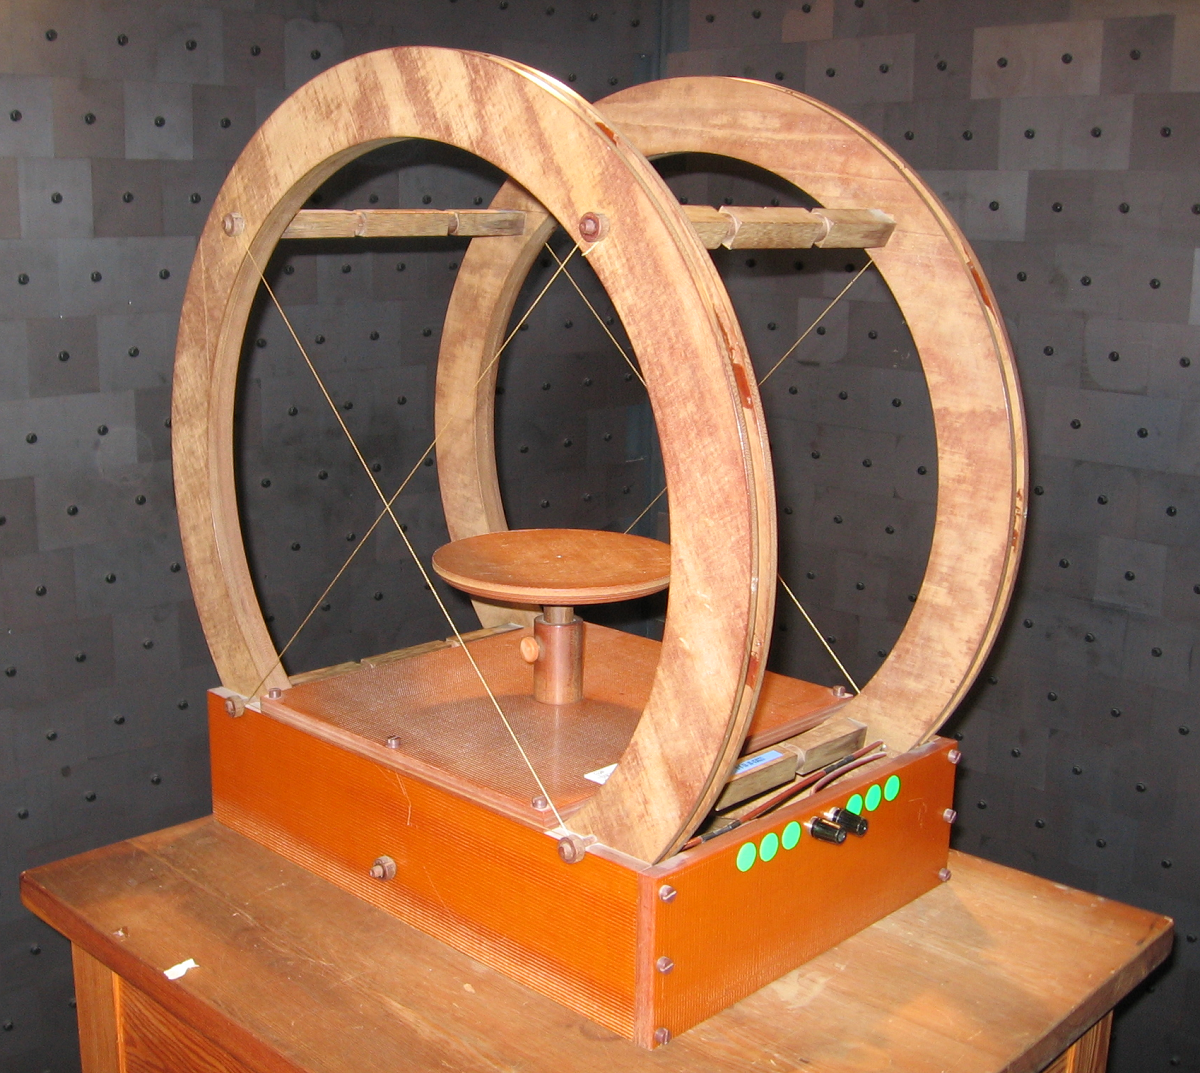 Przyrząd o nazwie cewki Helmholtza - dwa duże koła, na które nawijane są cewki.